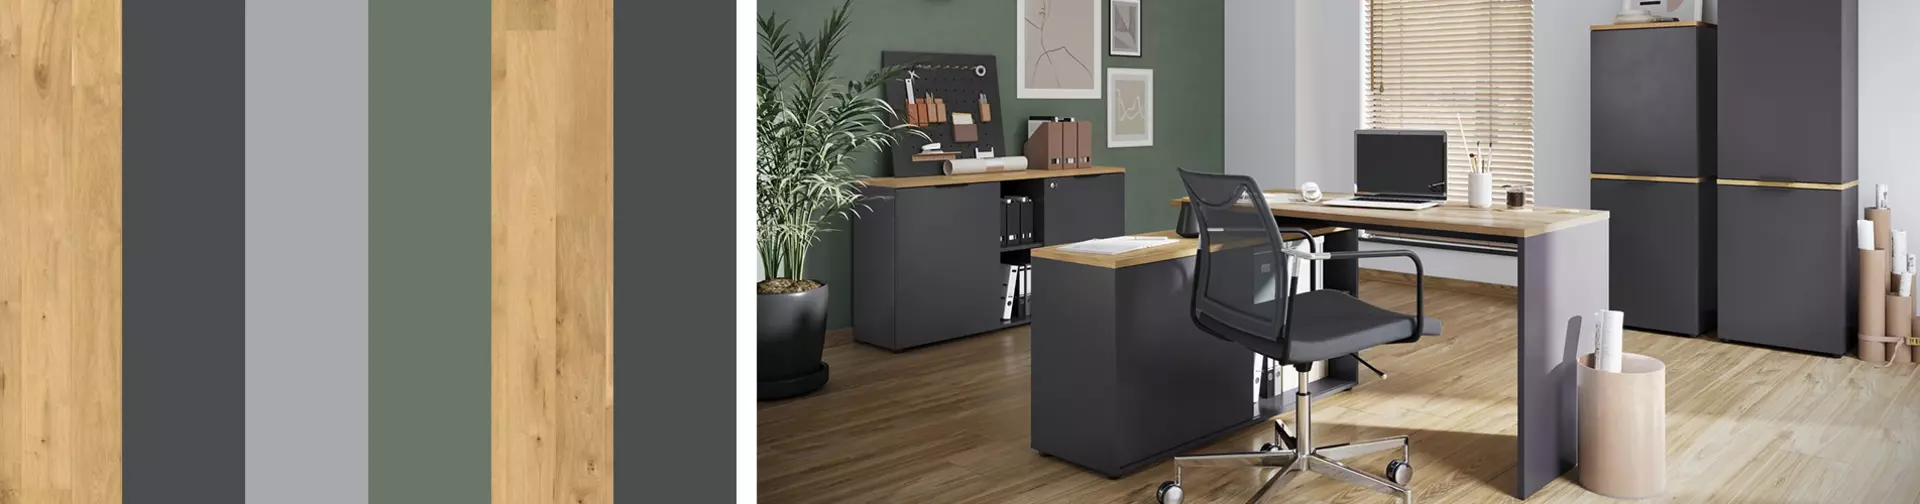 Black and Green Office. Shop the Look für Homeoffice und Büro bei Möbel Inhofer entdecken